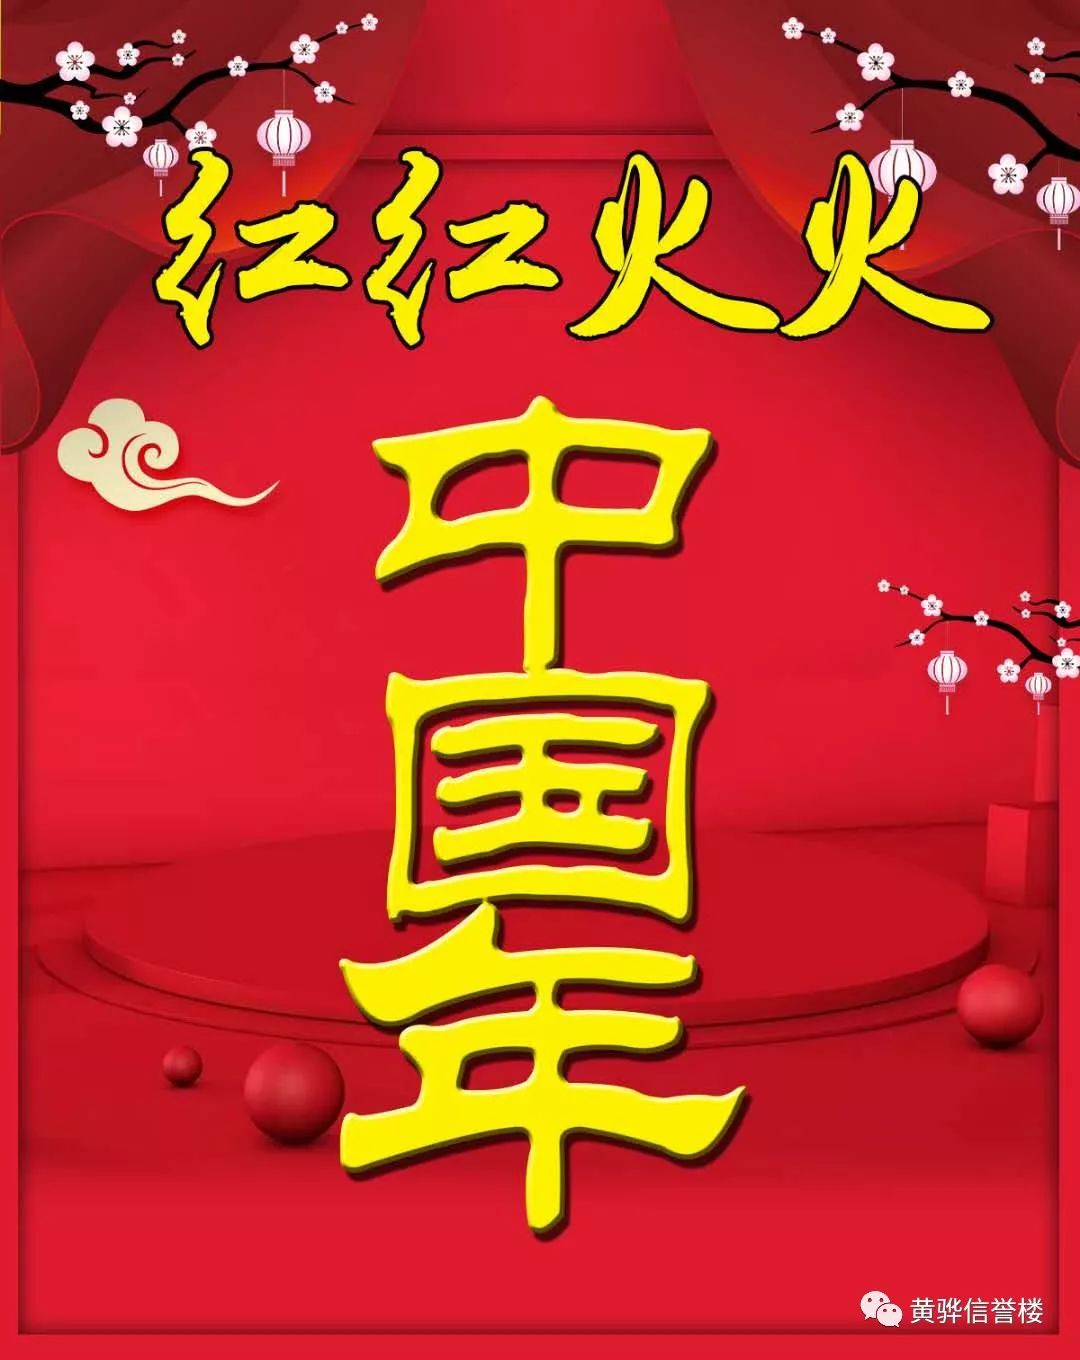 黄骅信誉楼---品质年节"新年到,贴春联,红红火火中国年"!